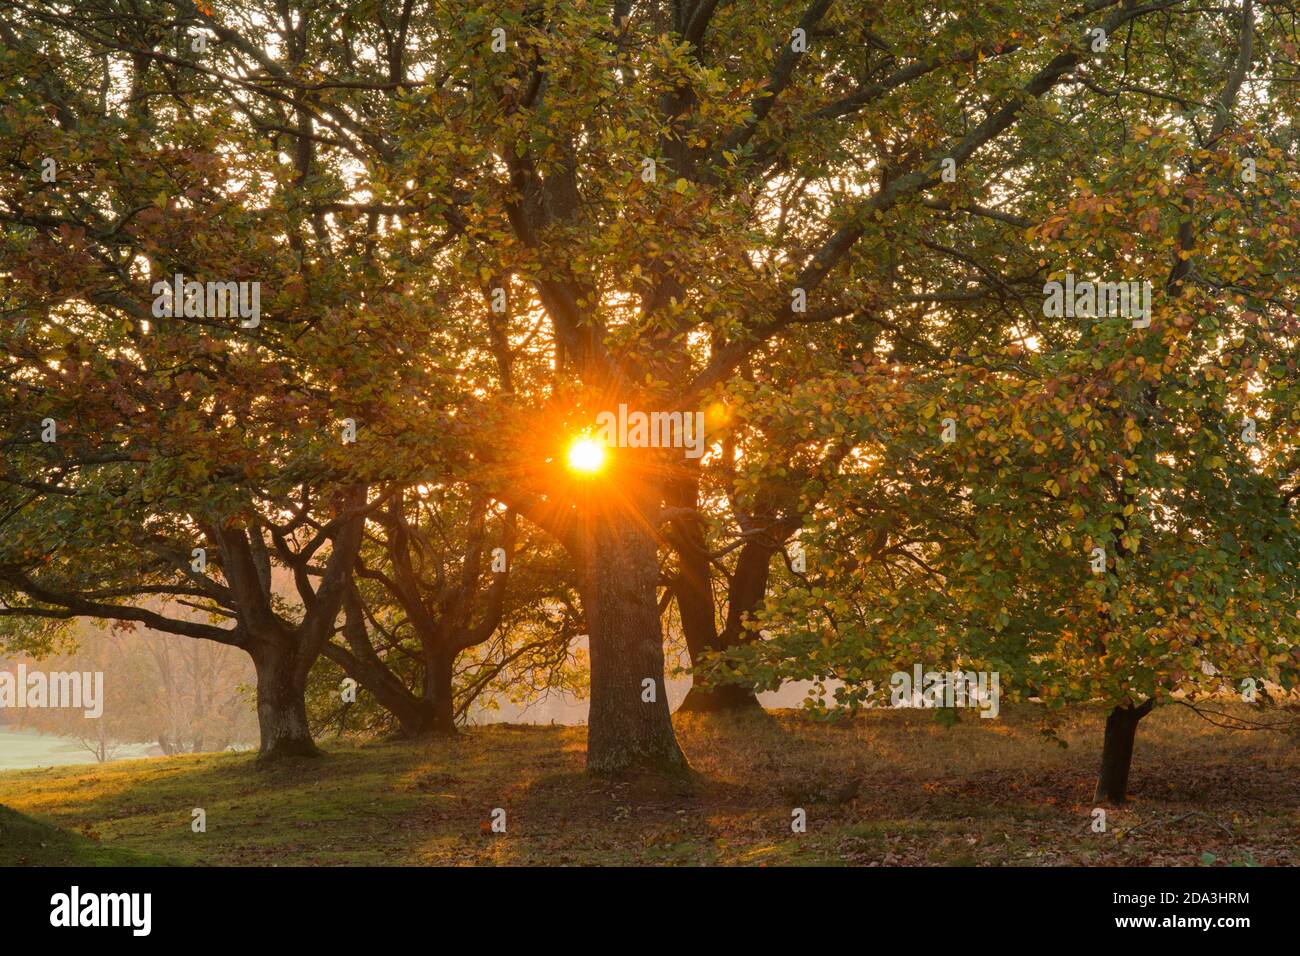 Buche, Fagus sylvatica, Eiche, Qurcus, Sonne untergeht im Herbst hinter farbigen Blättern Sonne zeigt durch goldene Bäume, November Stockfoto